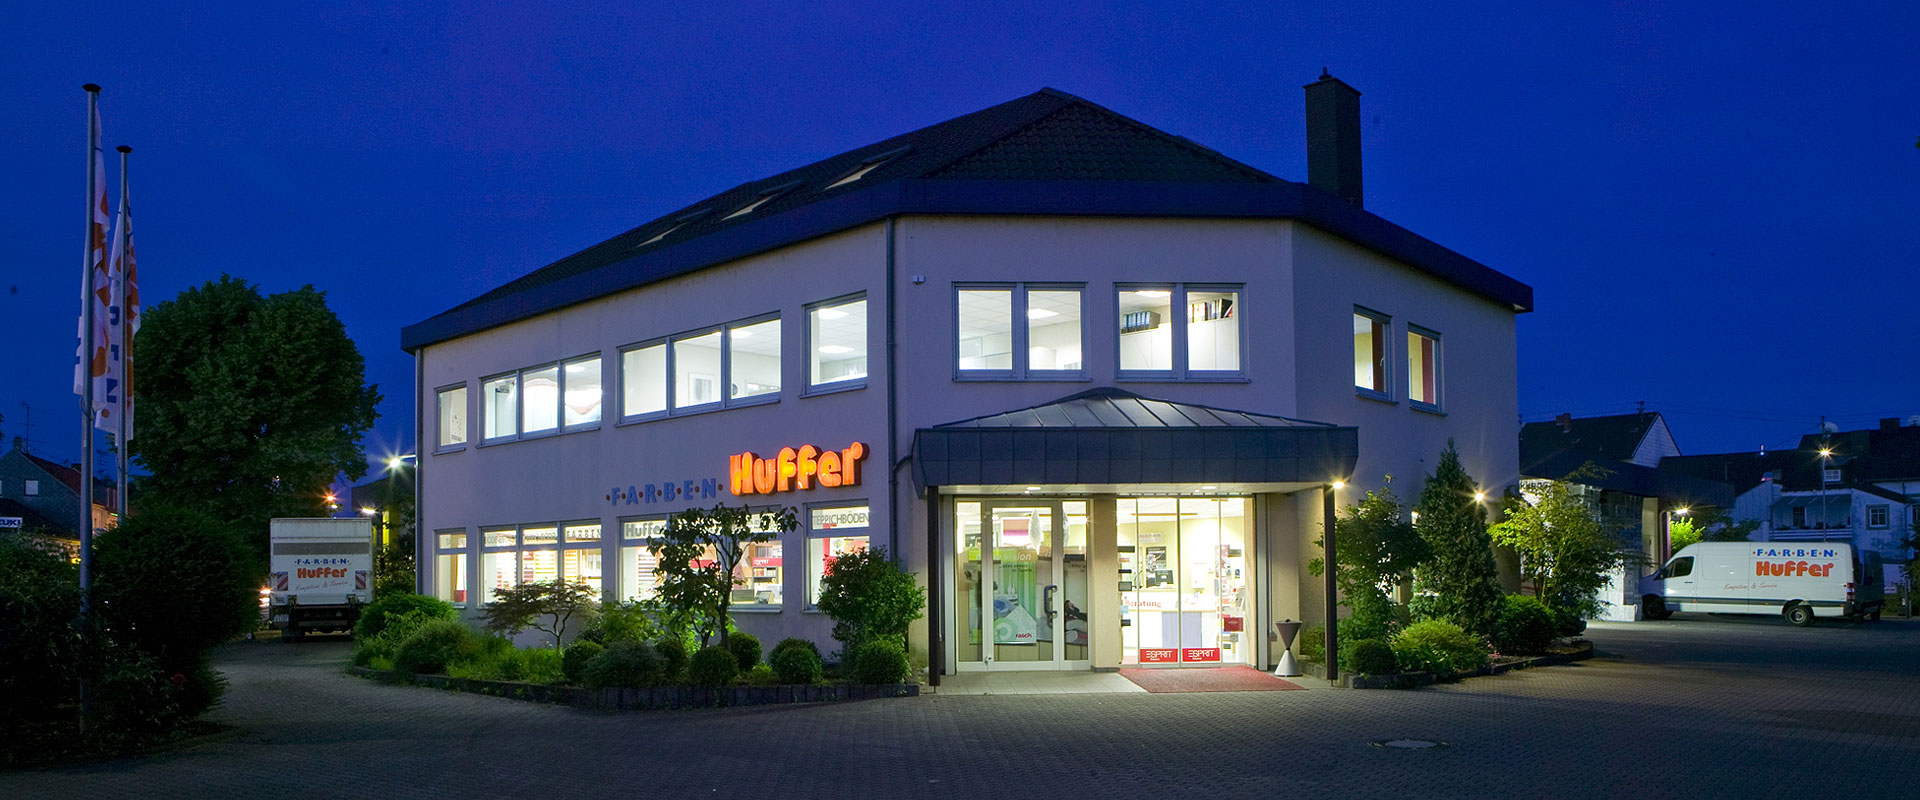 Huffer Farben GmbH • Farben, Tapeten, Bodenbeläge in Saarlouis, Saarbrücken, St. Wendel im Saarland.